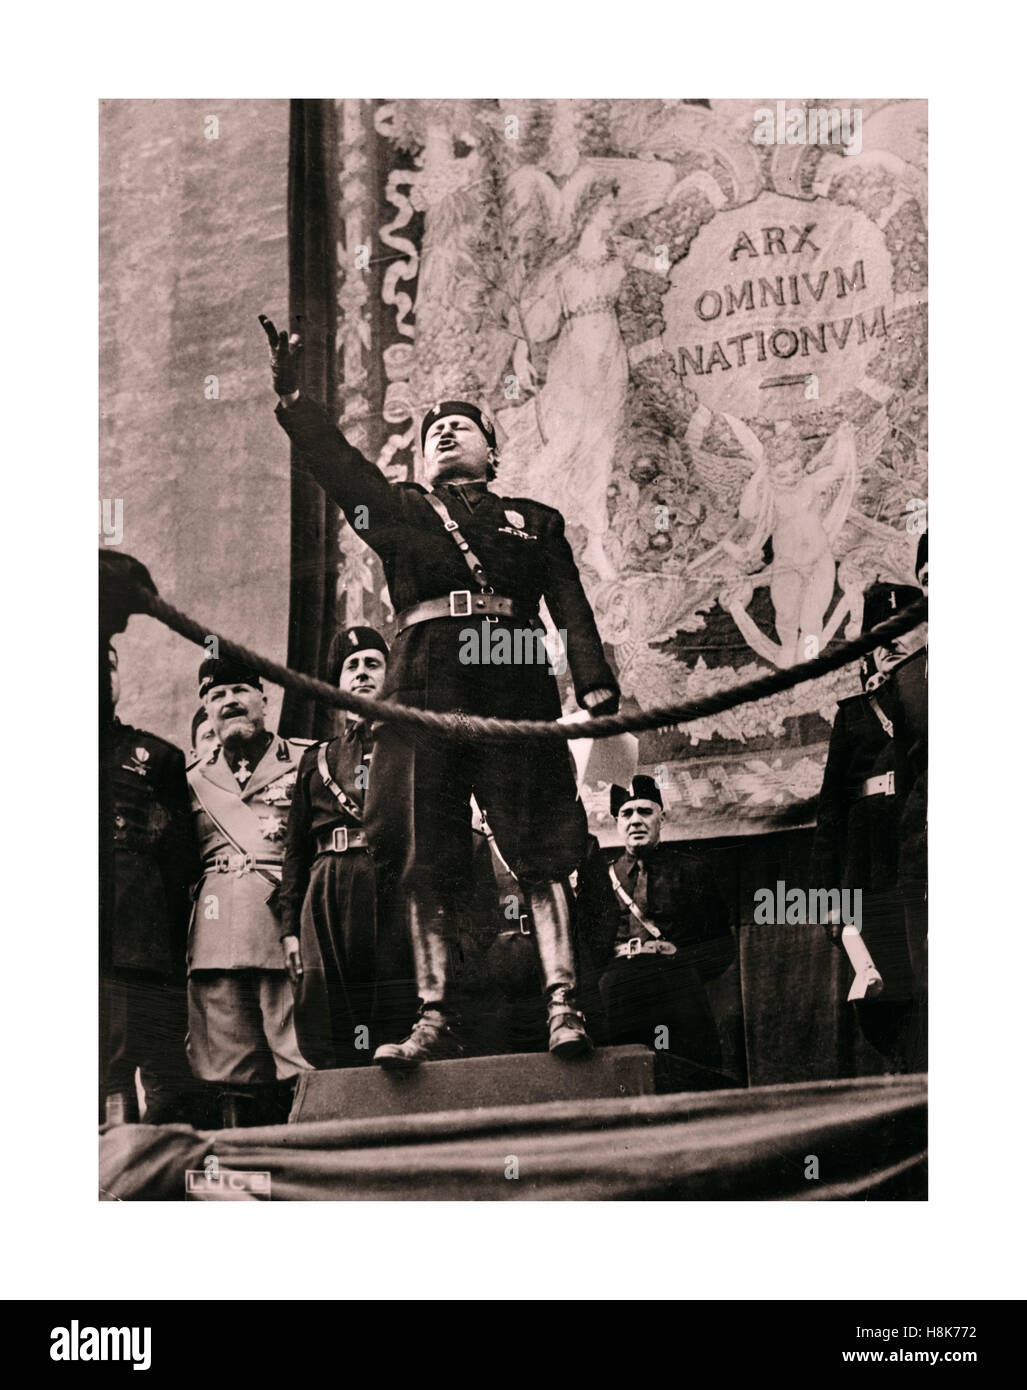 Facist italien Benito Mussolini, dictateur, dans le plein débit oratoire à la foule à Rome avec une tapisserie derrière lire 'omnium nationum arx' Le centre de toutes les nations ...(Cicéron) Siège de l'Empire romain 1930 World War 2 ère Banque D'Images